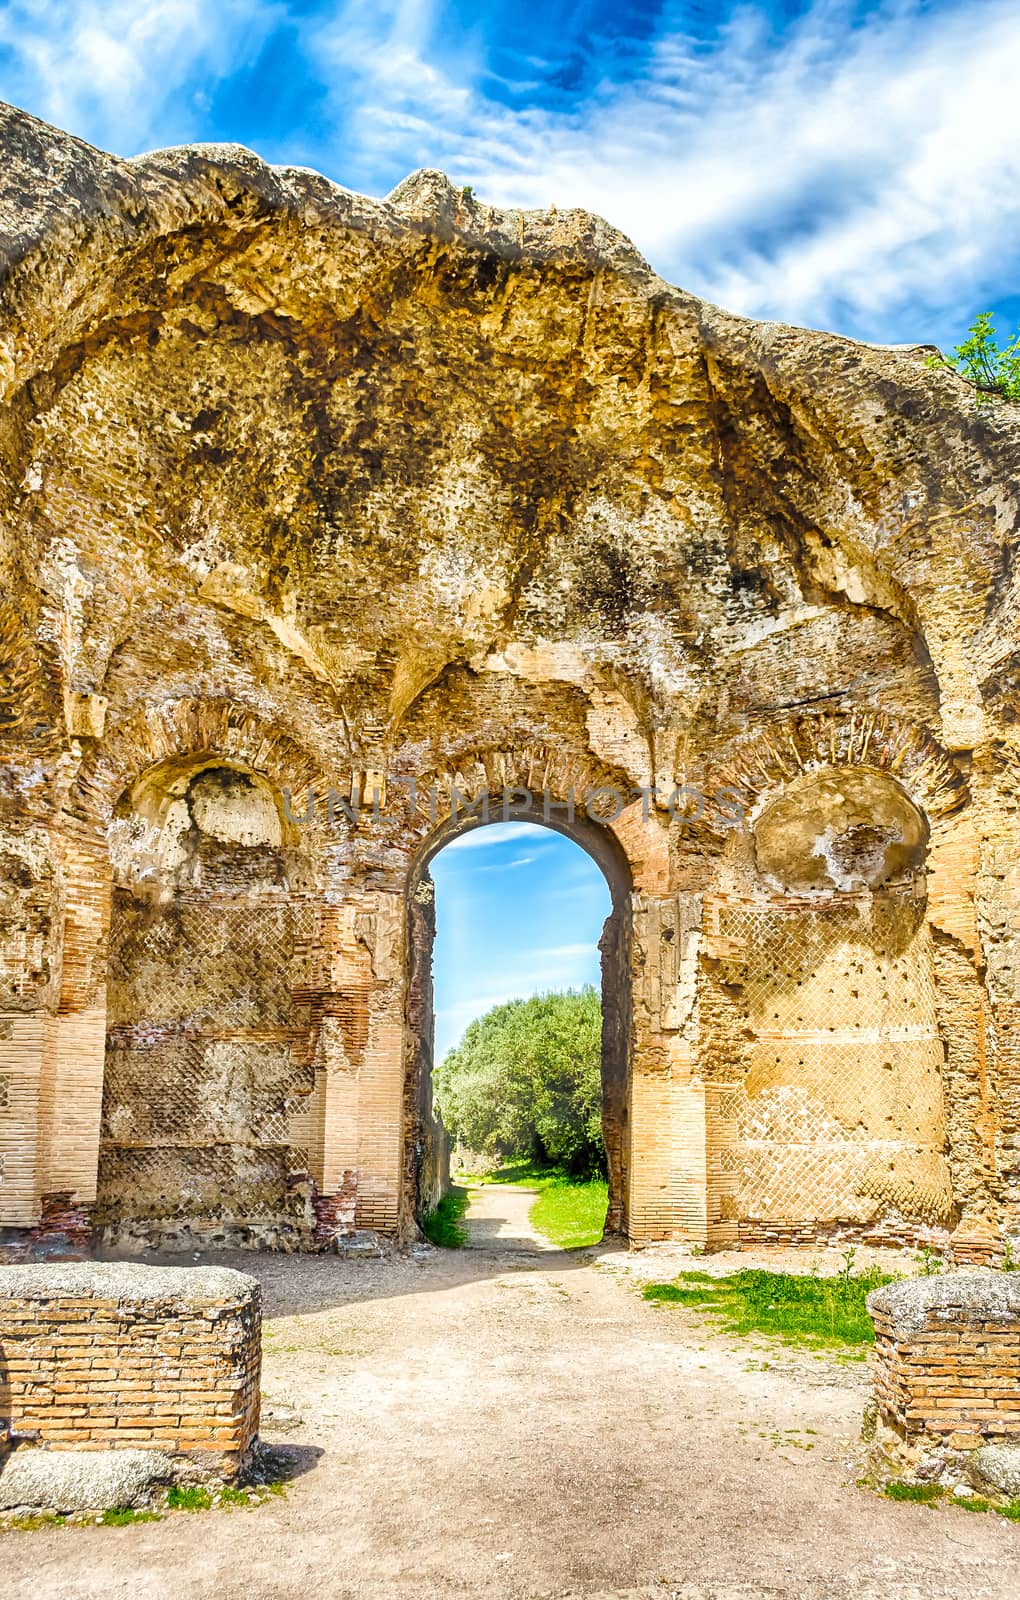 Ruins at VIlla Adriana (Hadrian's Villa), Tivoli, Italy by marcorubino